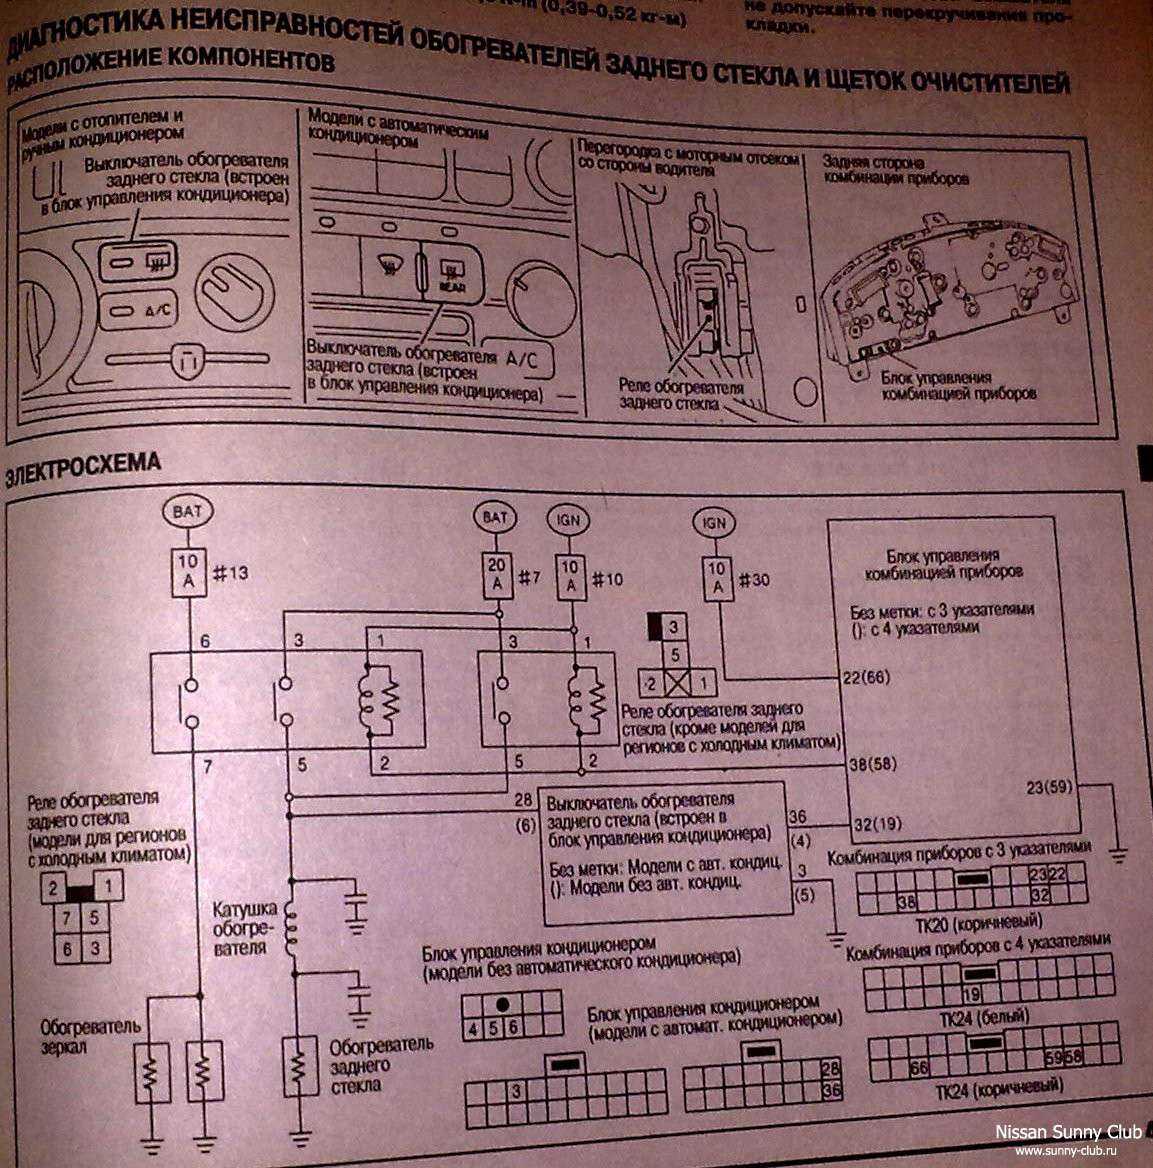 Руководство по ремонту ниссан санни 1991-1997 г.в. полное описание, схемы, фото, технические характеристики